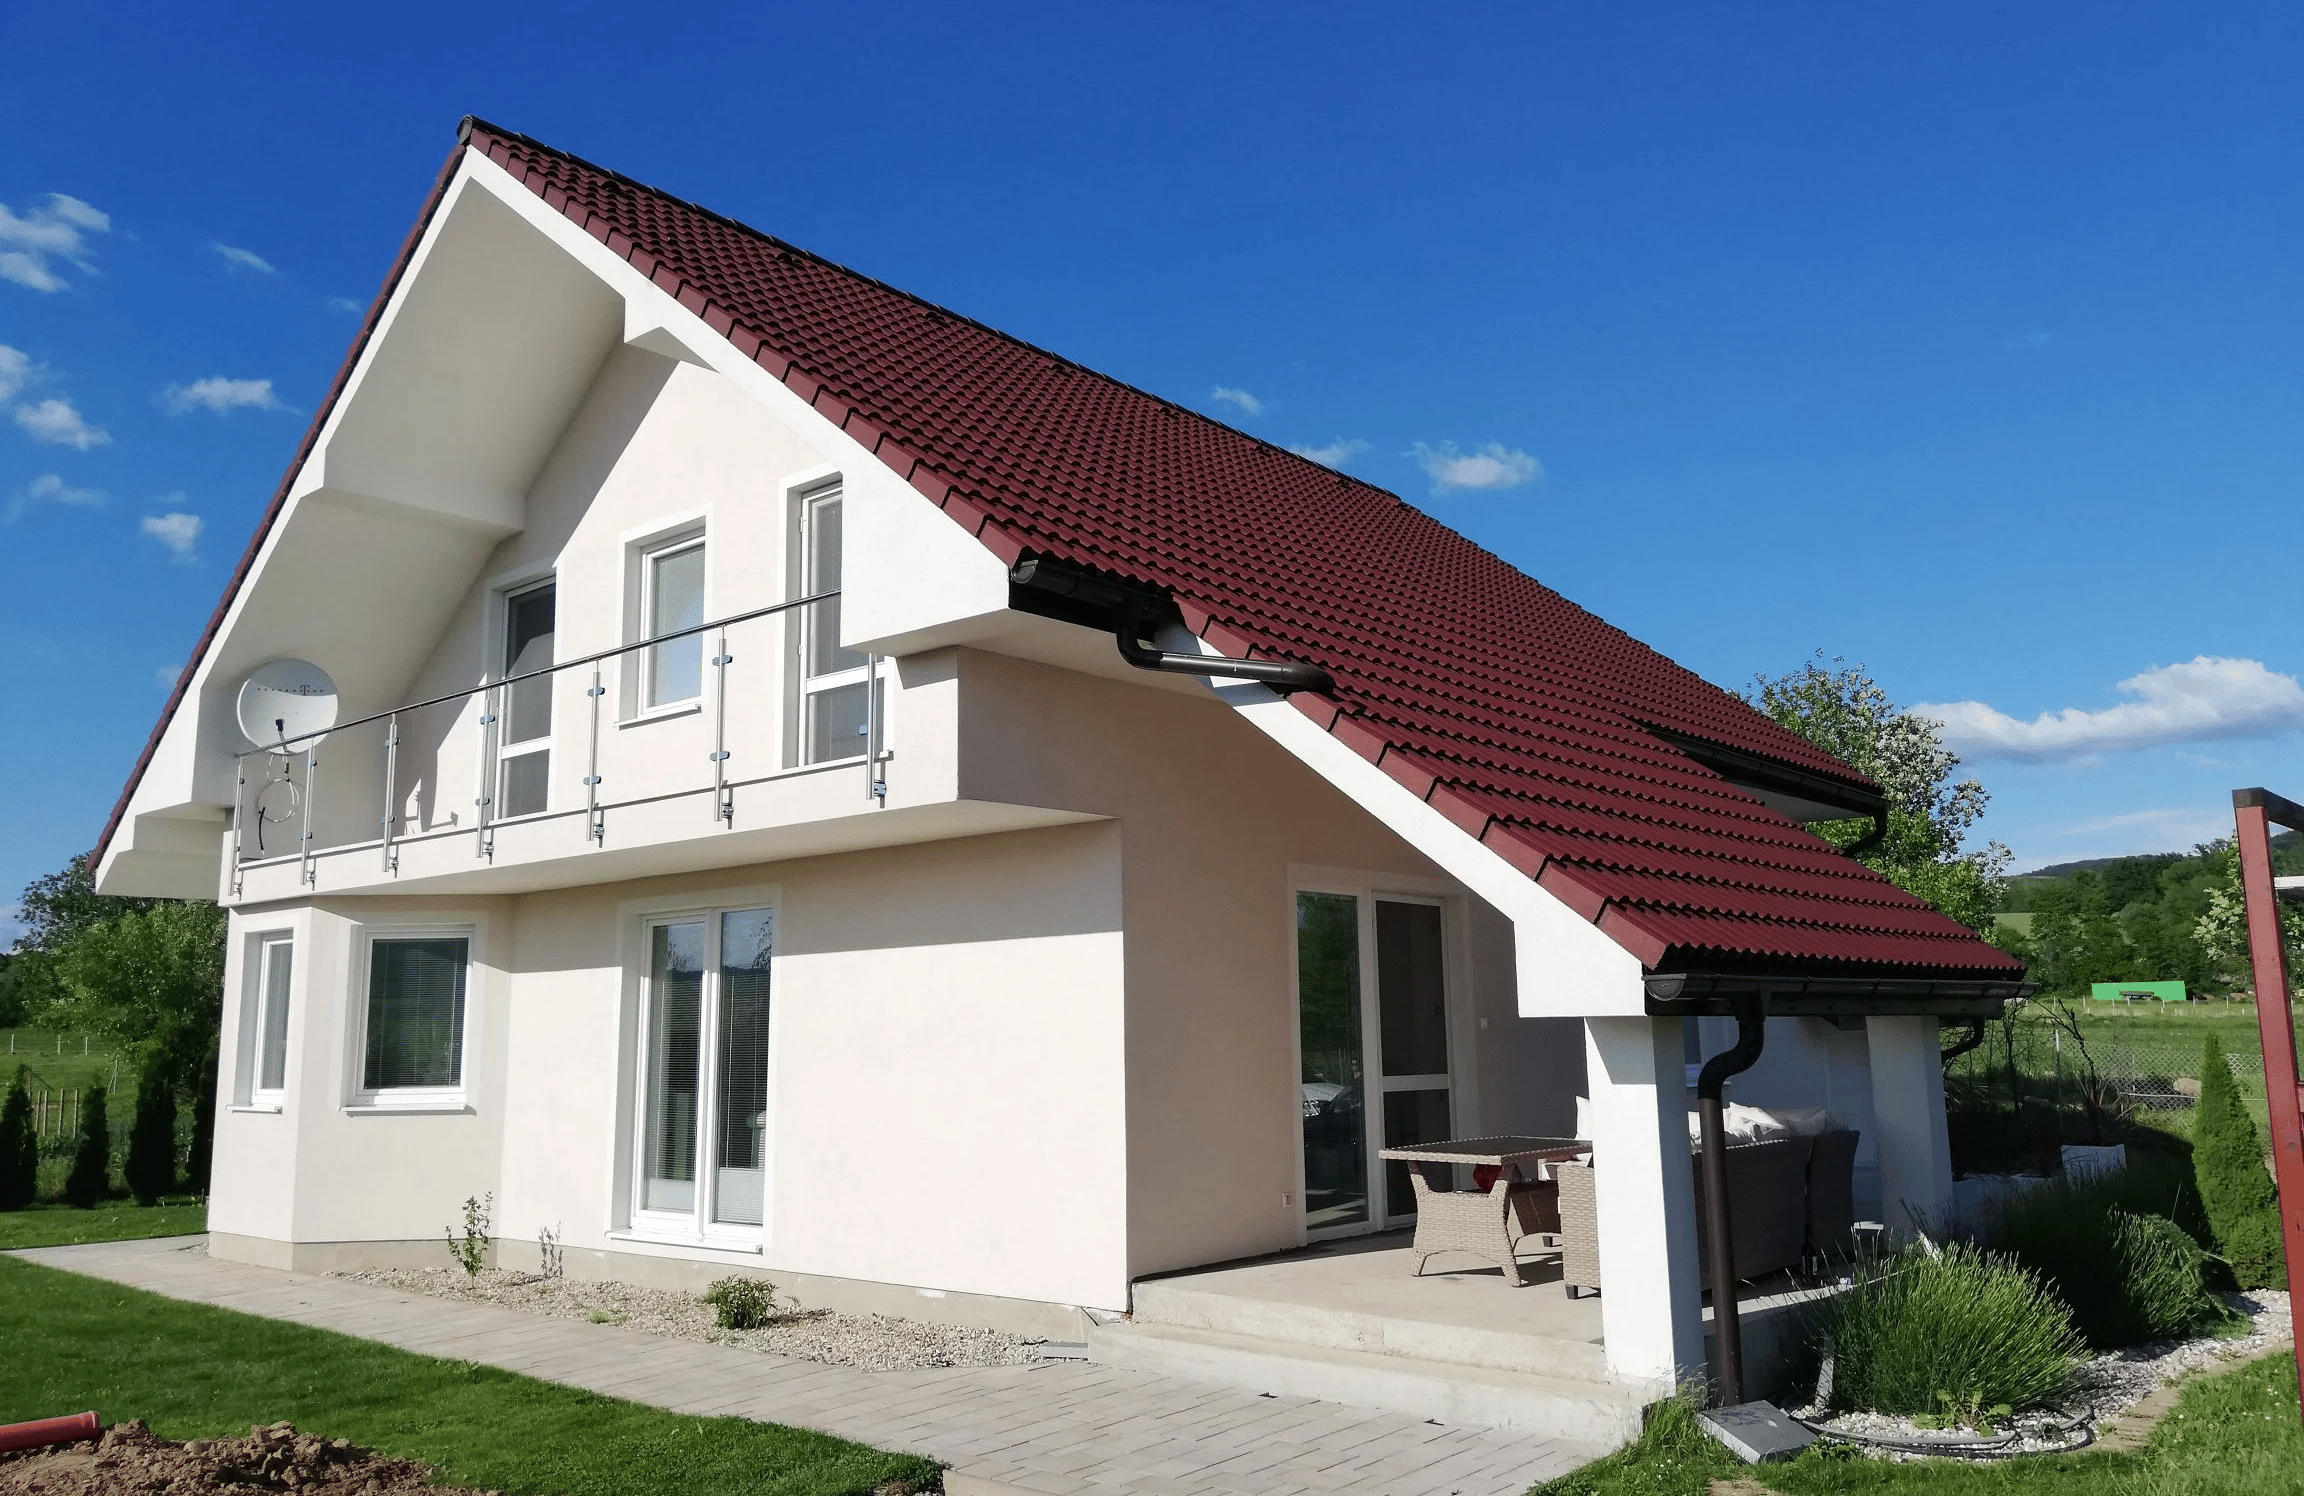 Stavby a rekonstrukcie domov - V M F STAV, s.r.o.